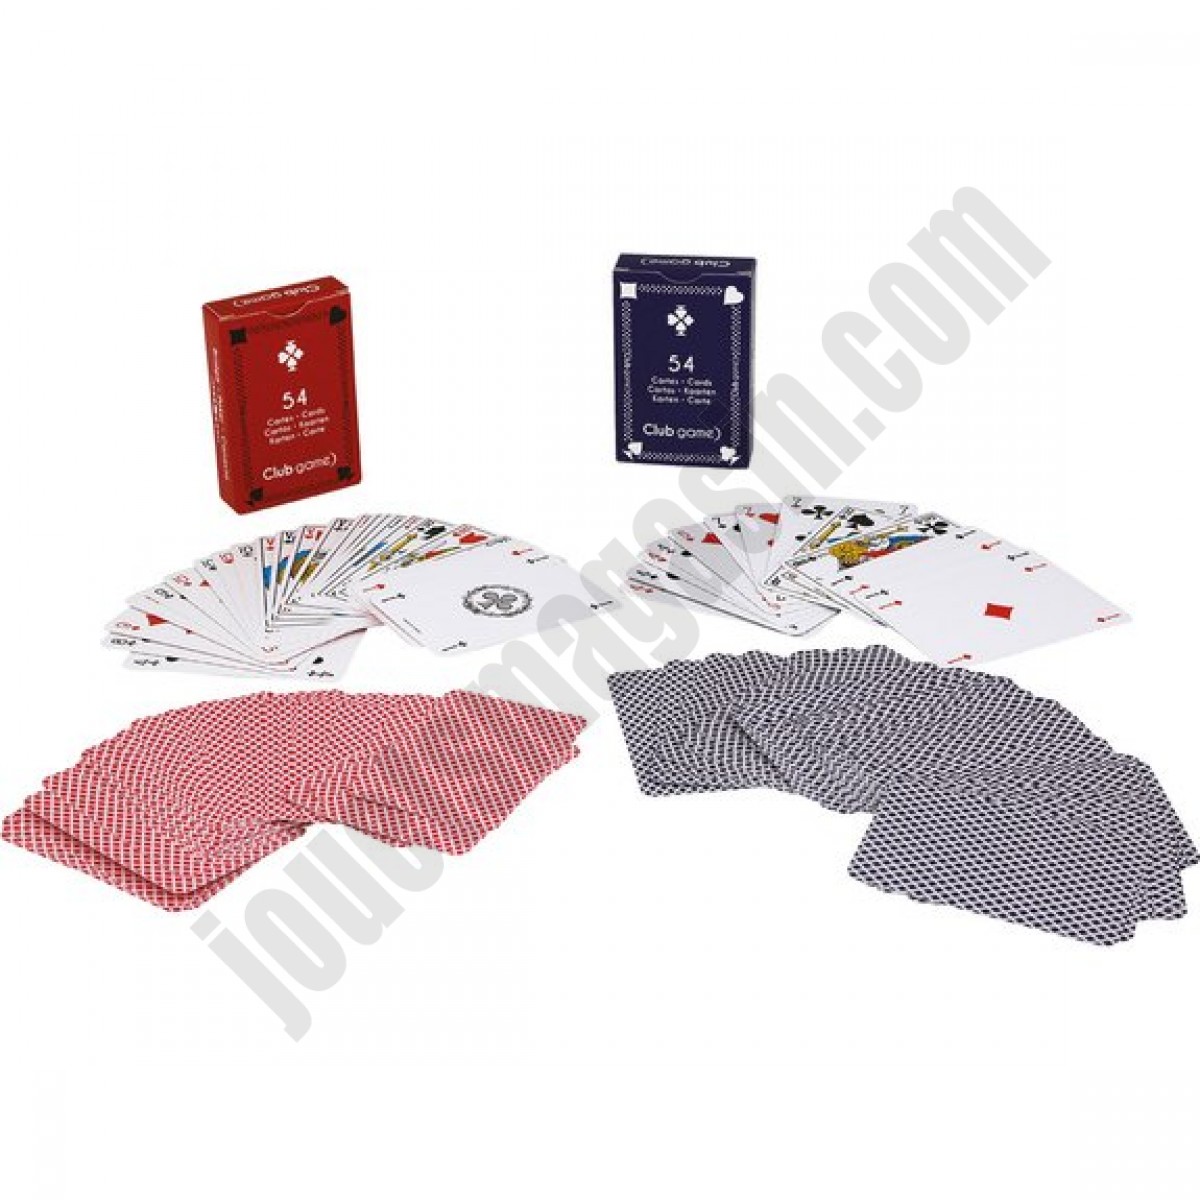 Pack de 2 jeux de 54 cartes ◆◆◆ Nouveau - Pack de 2 jeux de 54 cartes ◆◆◆ Nouveau